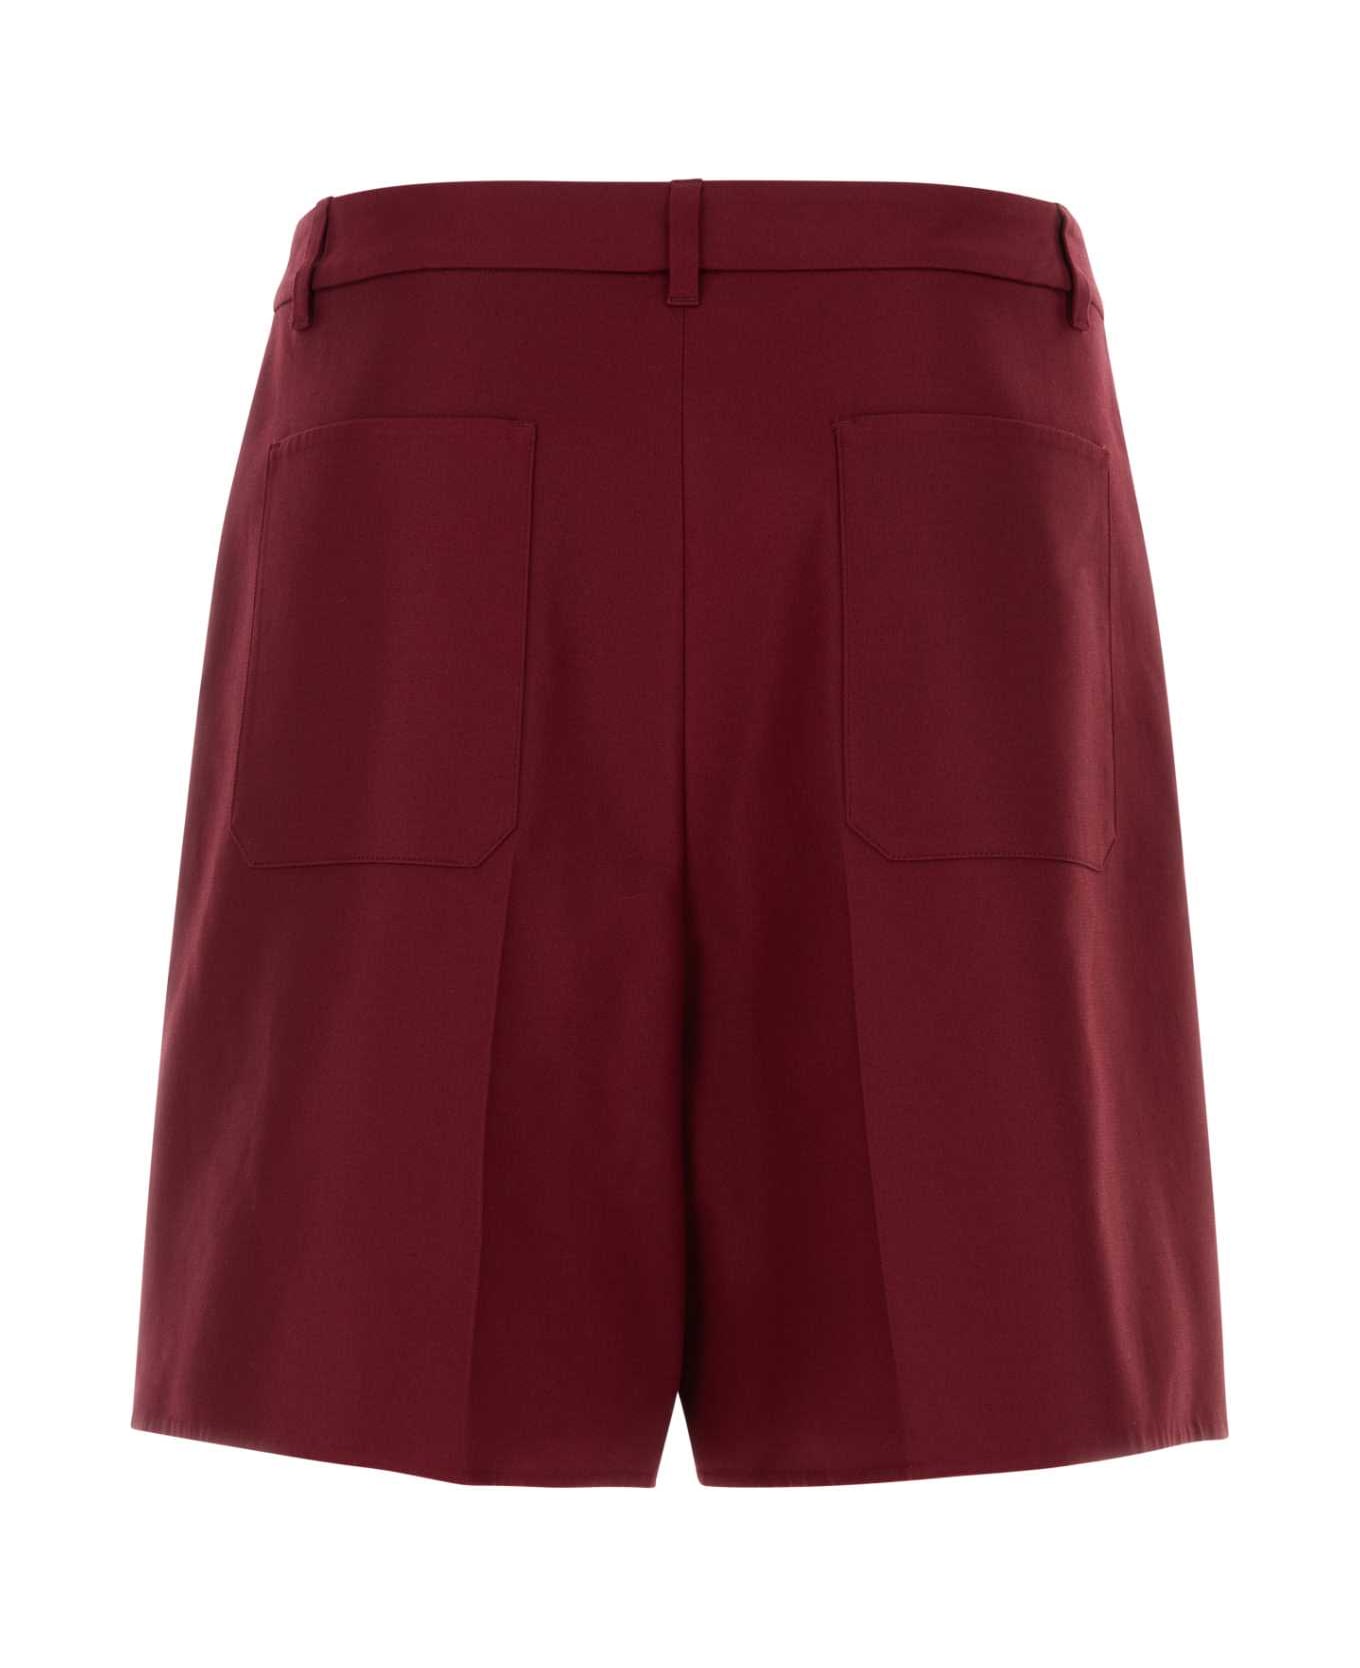 Valentino Garavani Burgundy Cotton Bermuda Shorts - RUBIN ショートパンツ